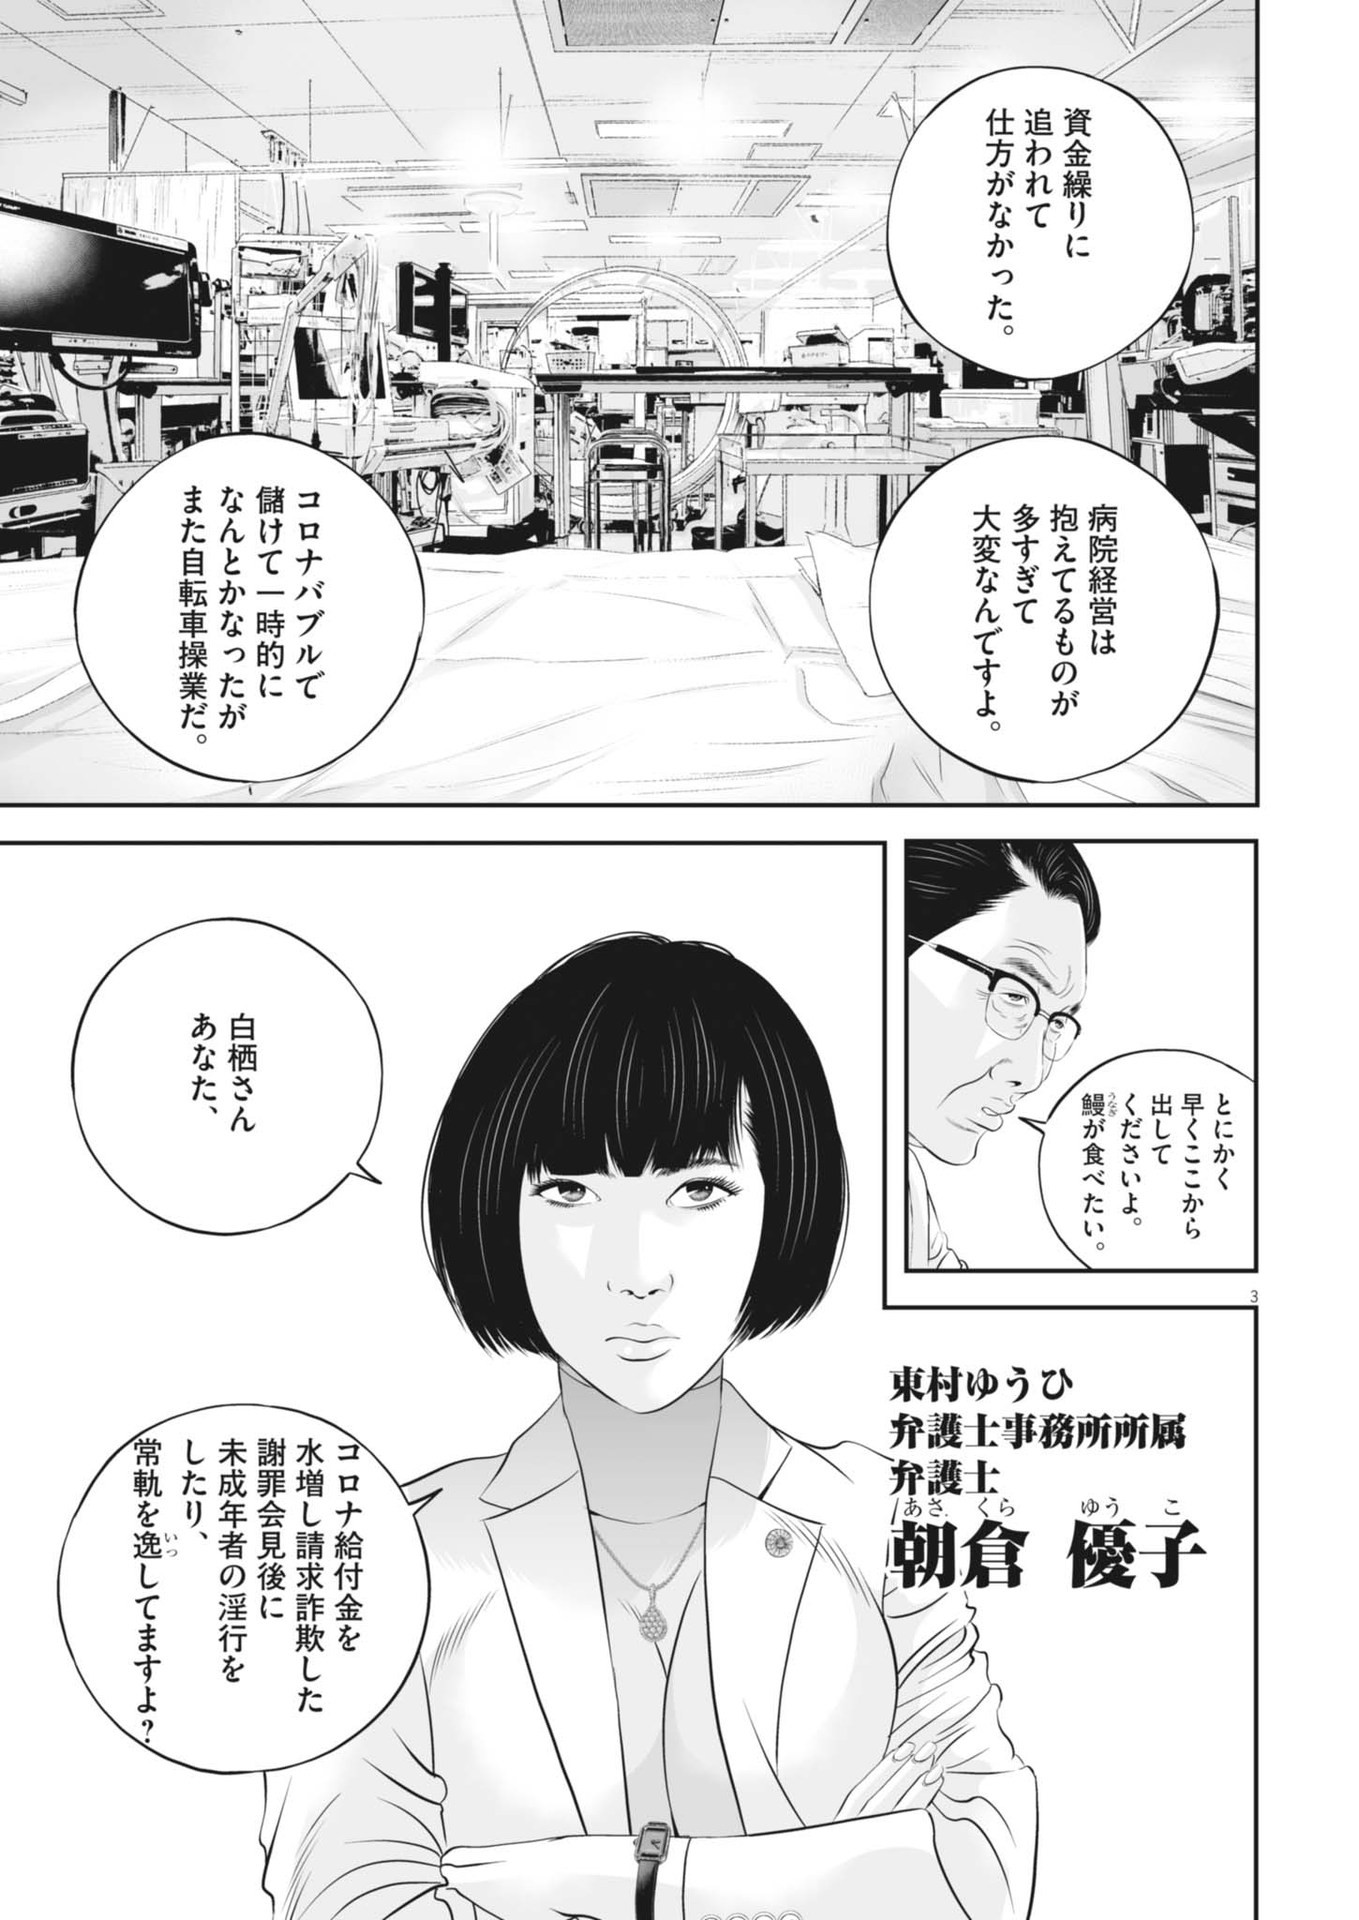 Kujou no Taizai - Chapter 99 - Page 3